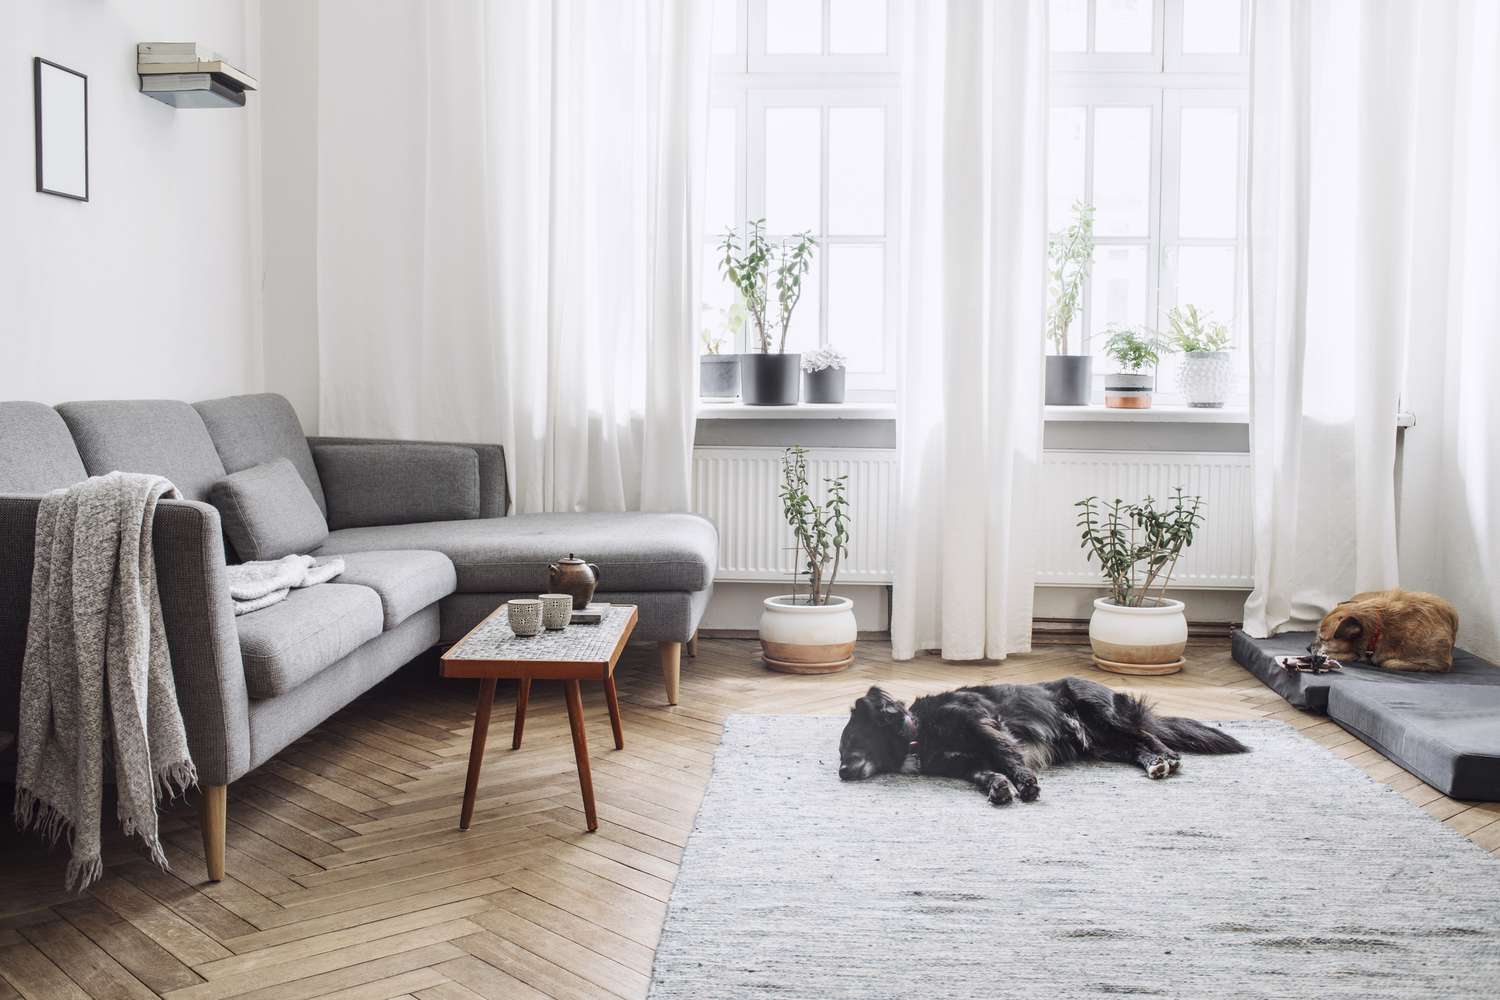 Design-Wohnzimmer mit kleinem Designtisch und Sofa. Weiße Wände, Pflanzen auf der Fensterbank und dem Boden. Braunes Holzparkett. Die Hunde schlafen im Zimmer.